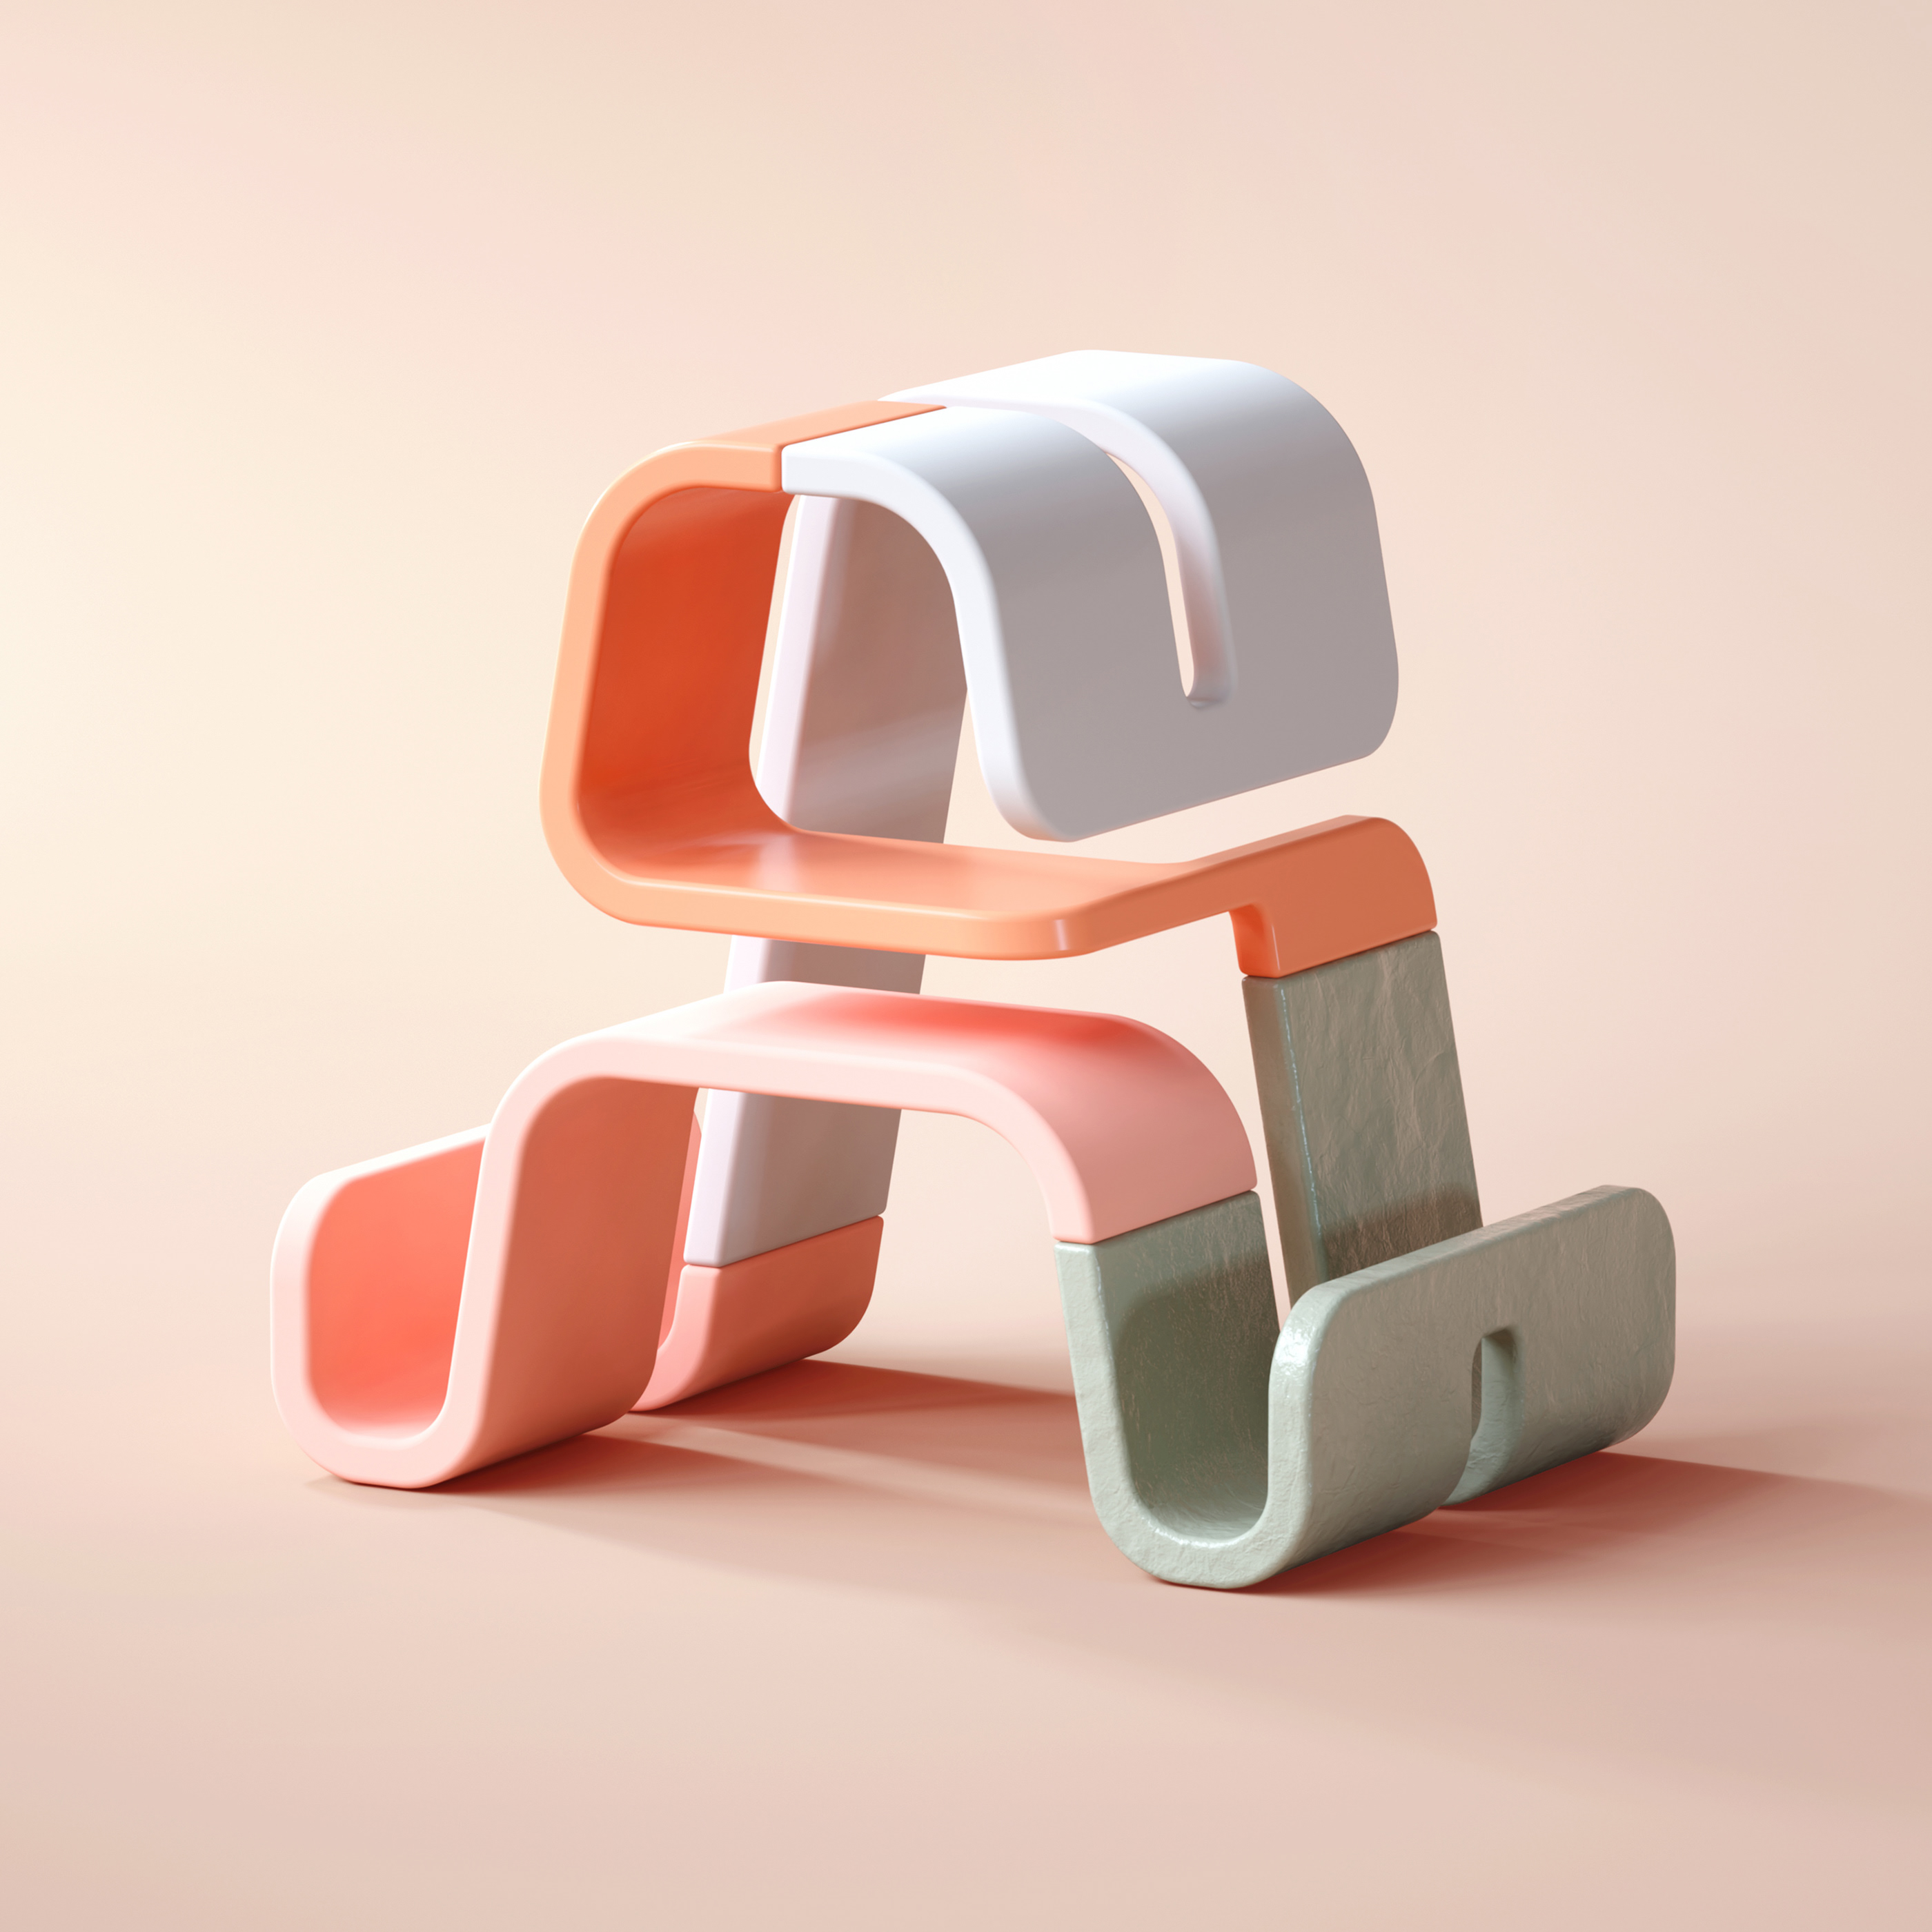 Modish 3D Typography by BÜRO UFHO - 36 Days of Type'19